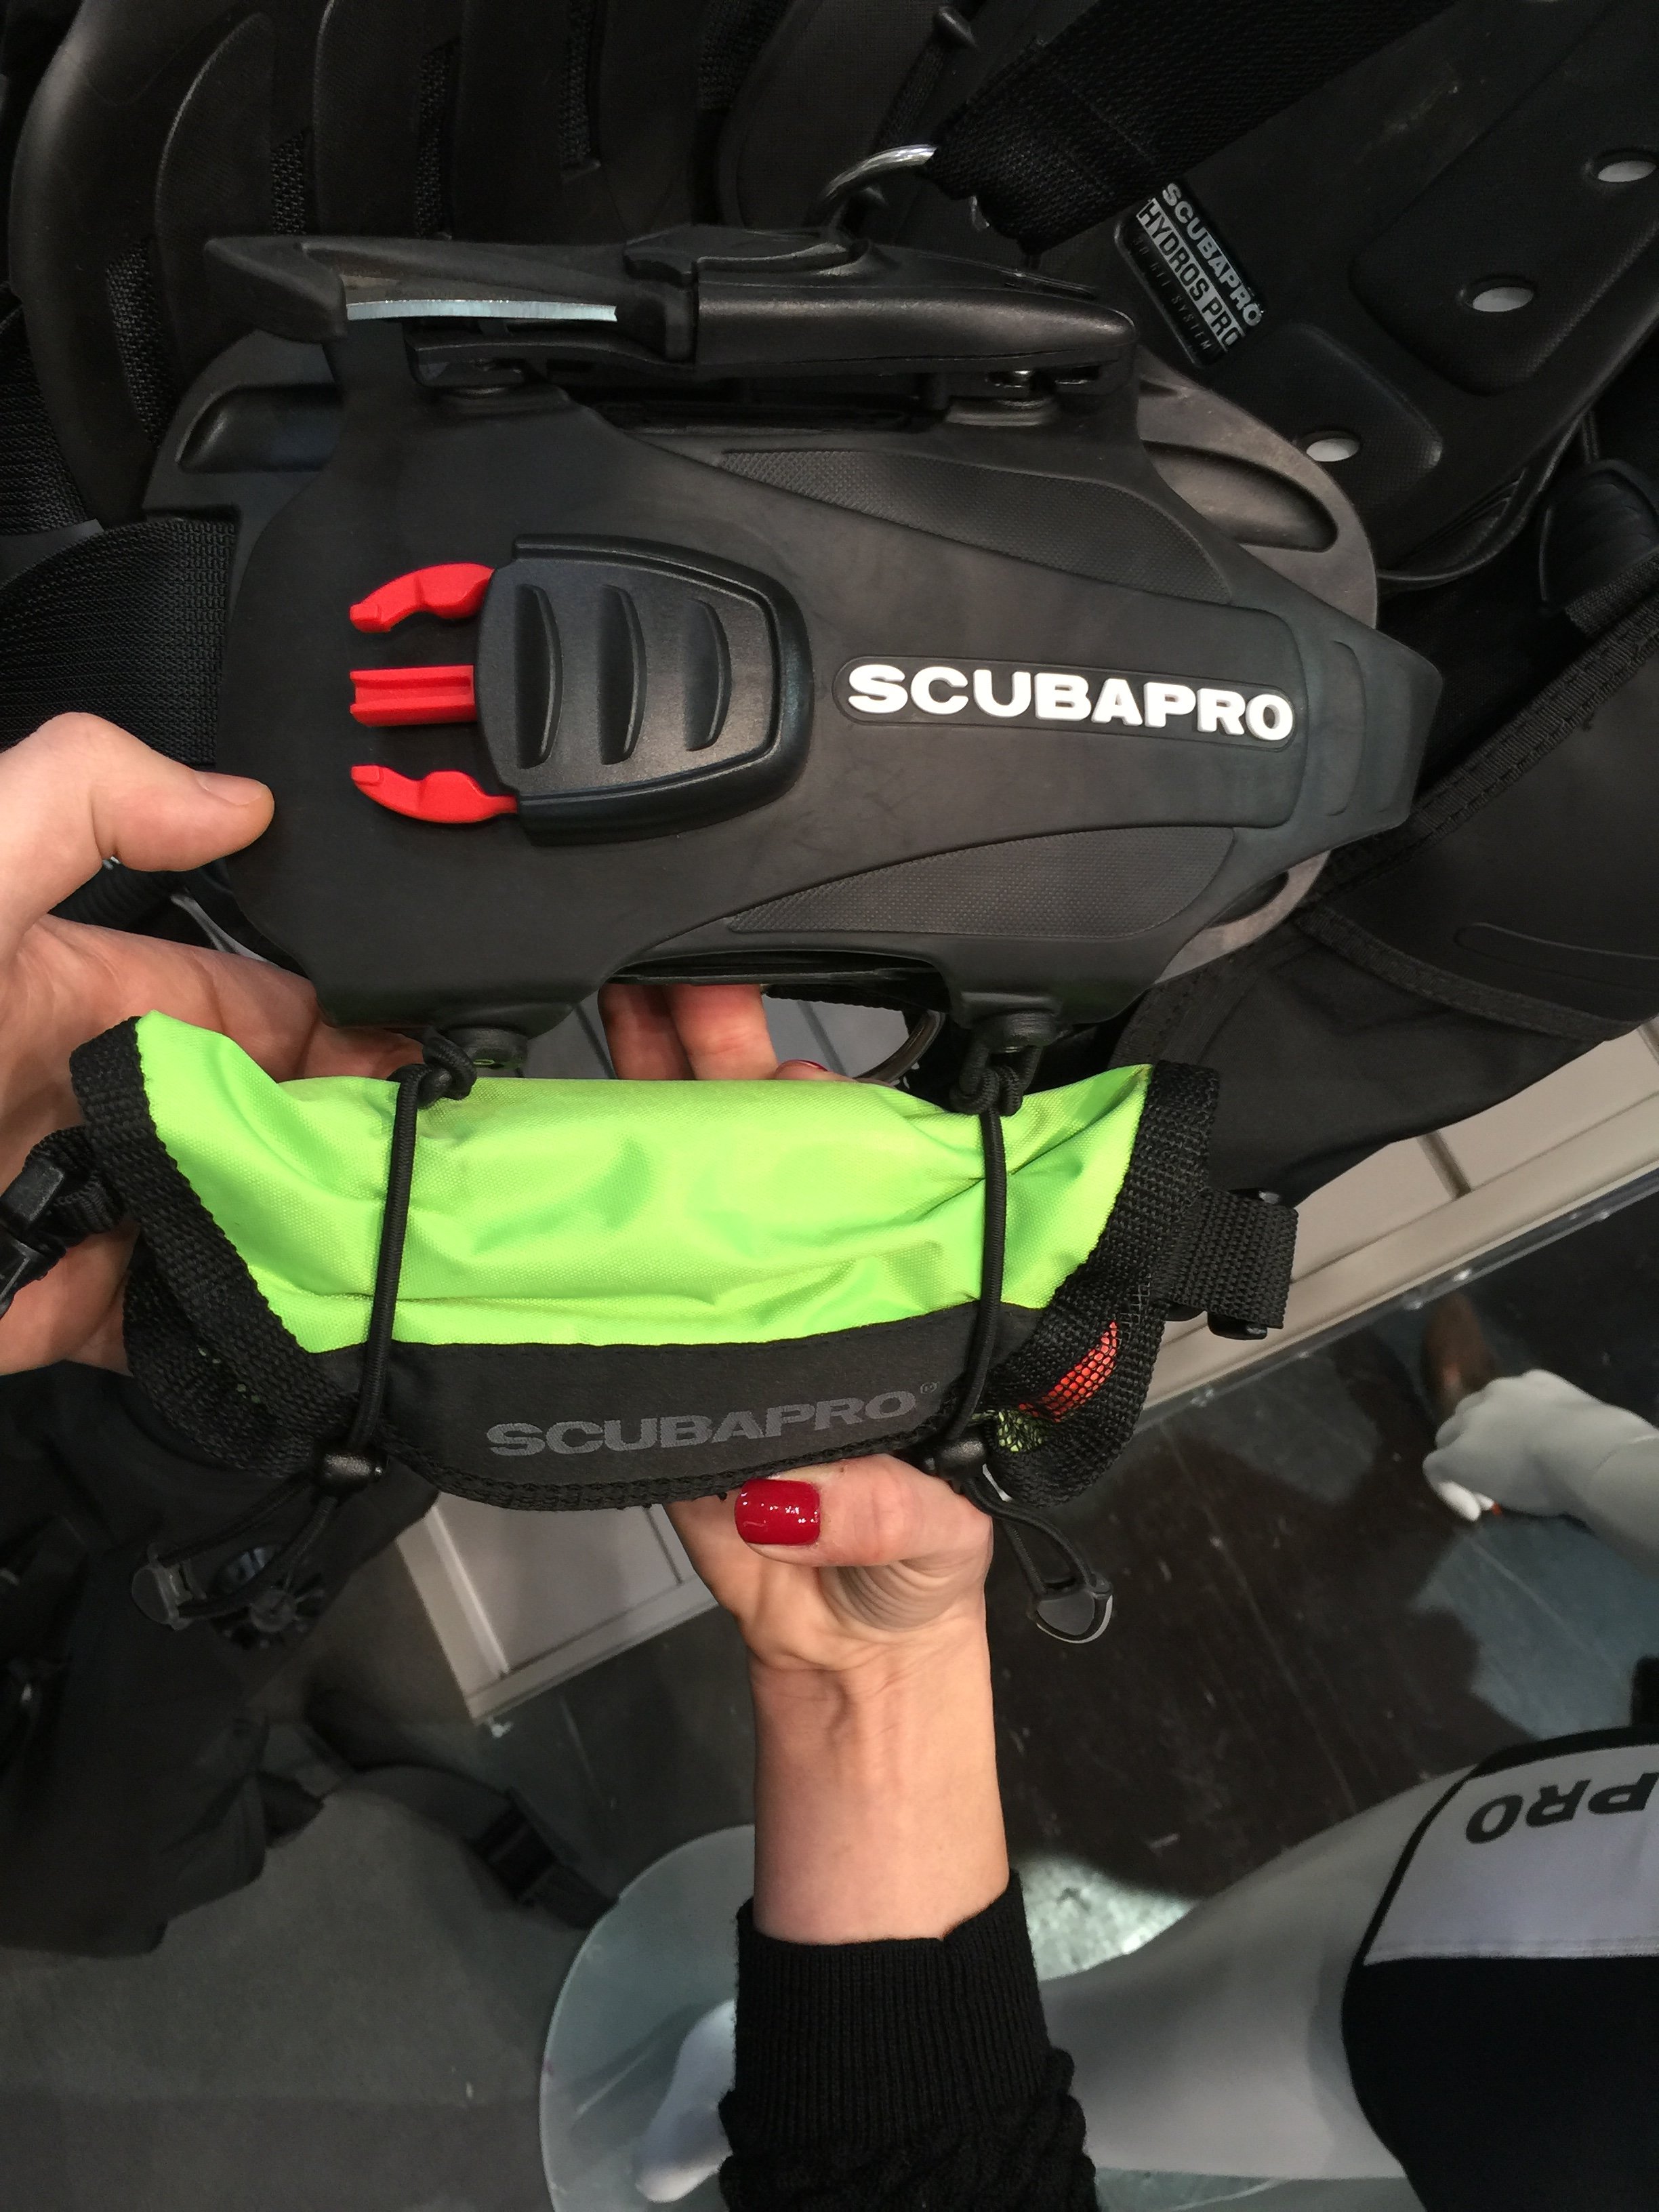 scubapro hydros pro bcd accessories